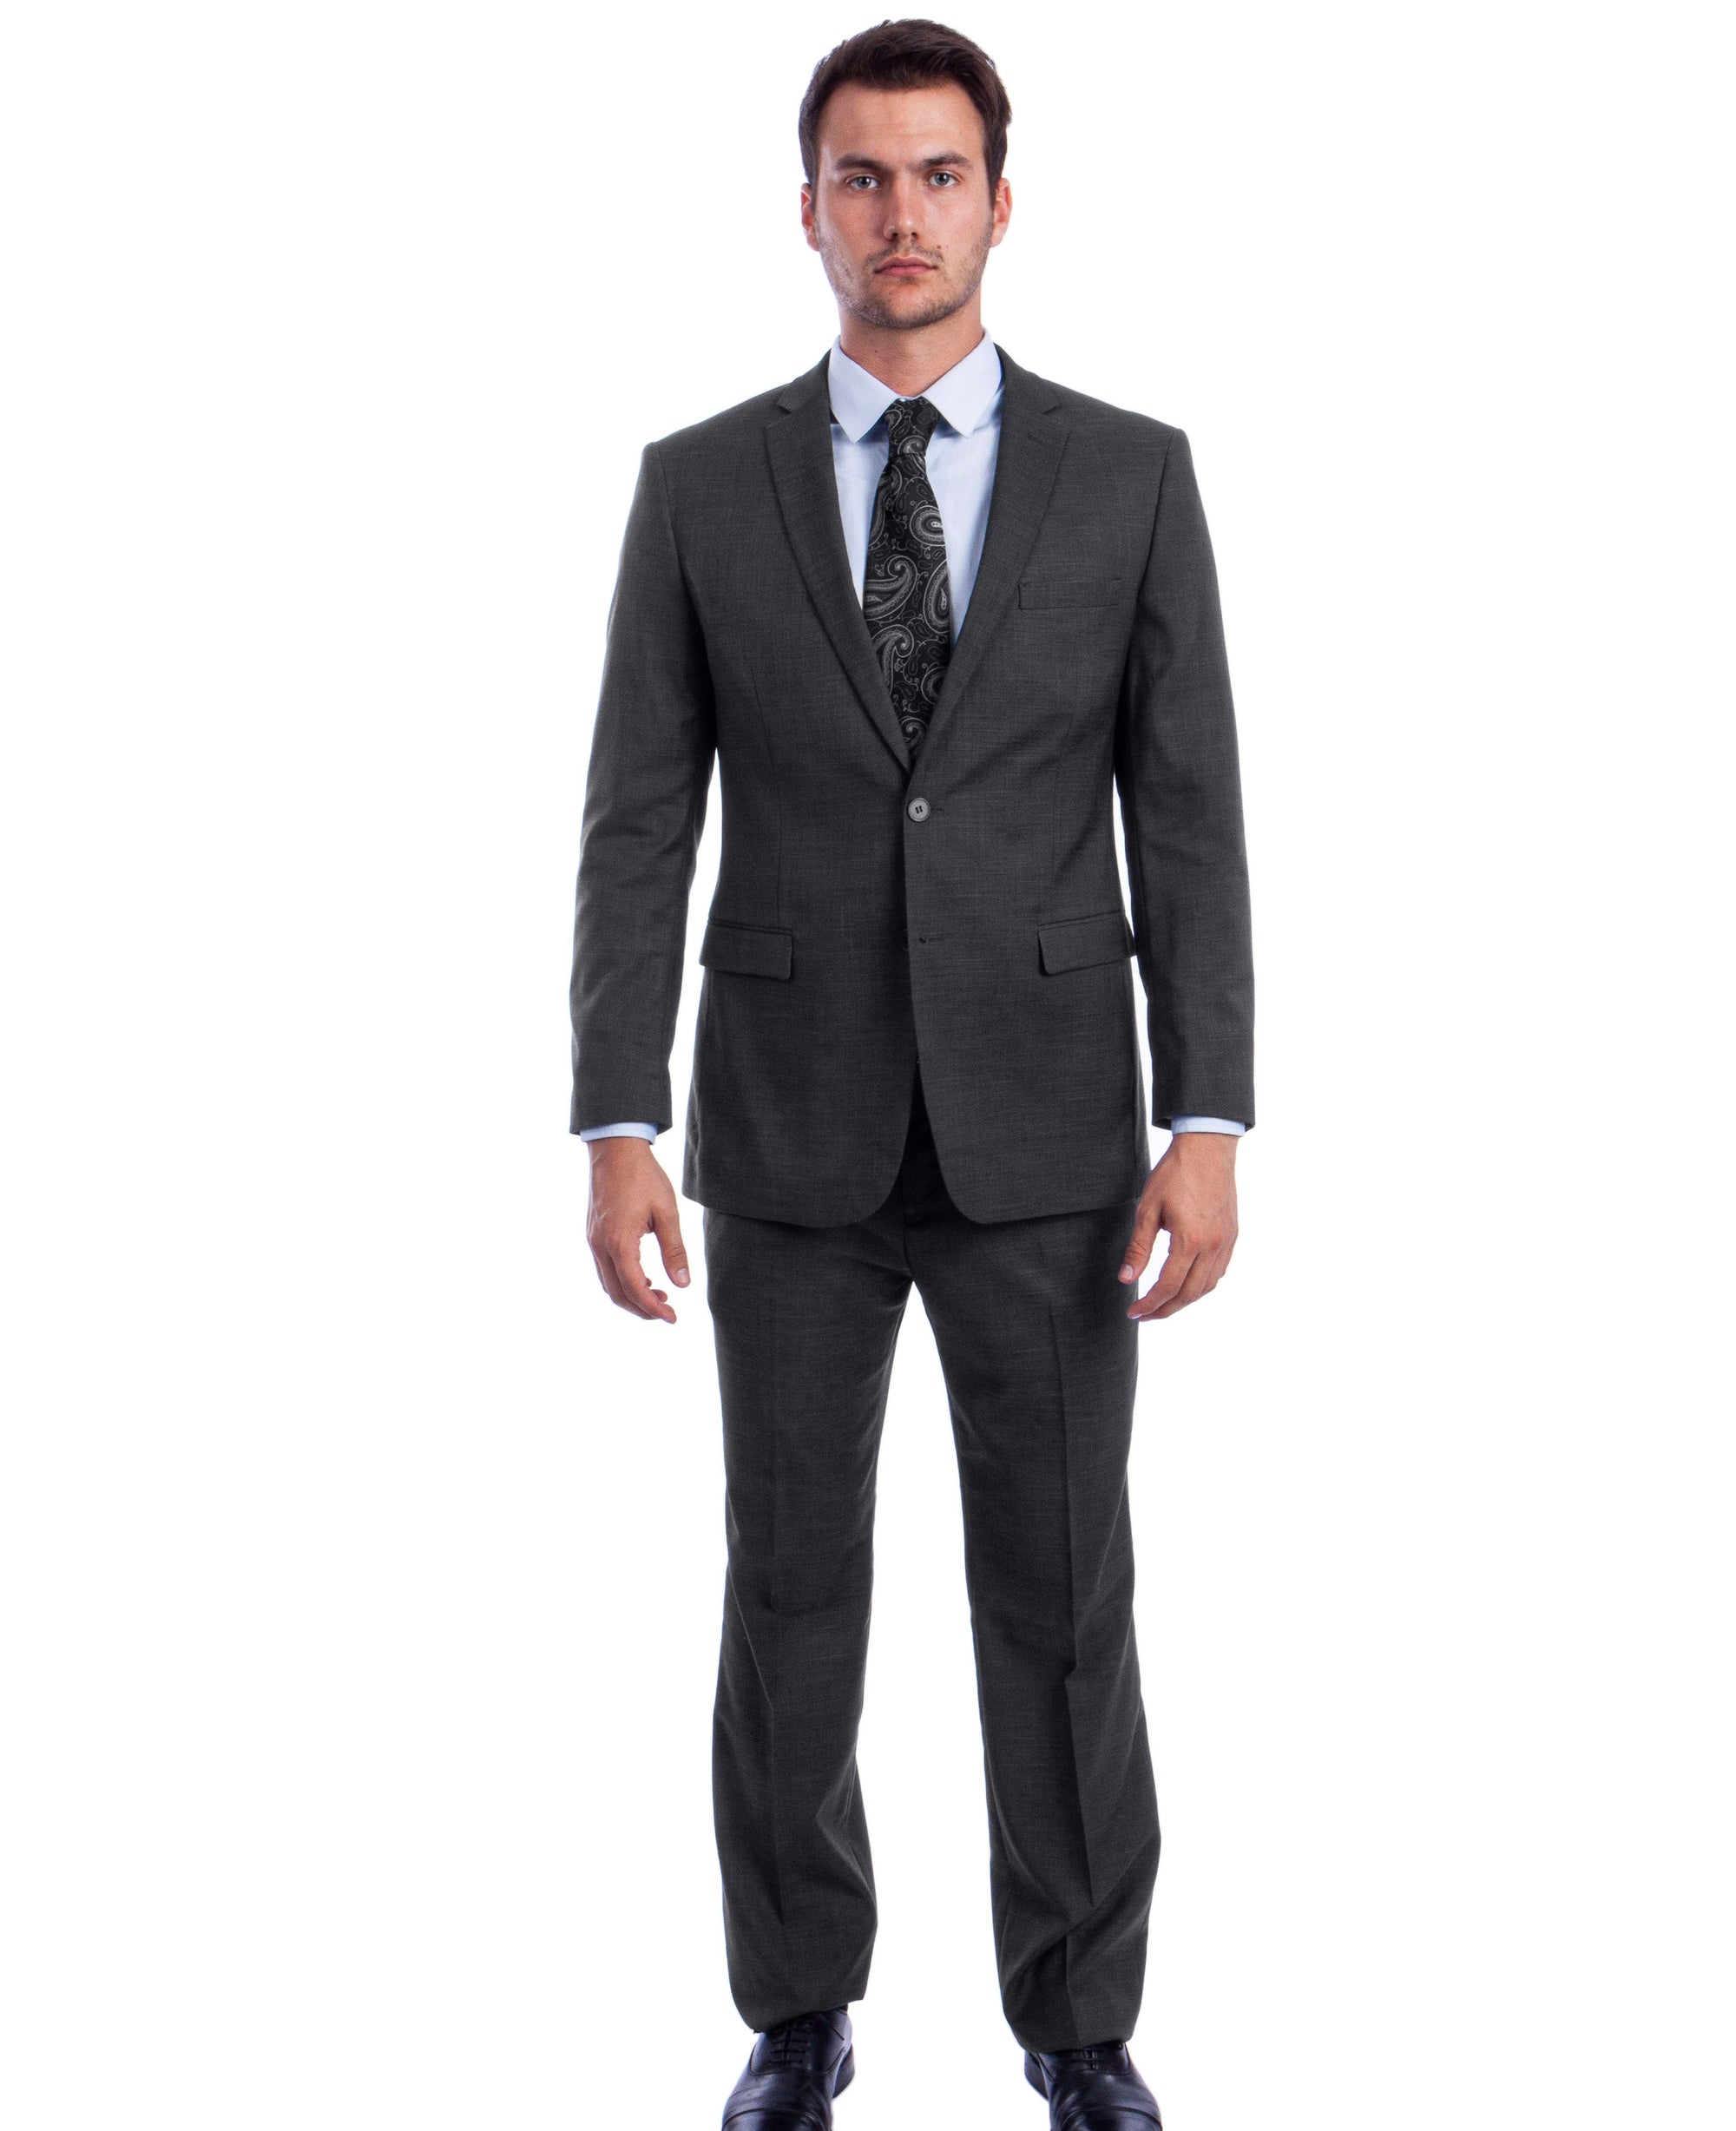 Men's Dark Grey Formal Suit